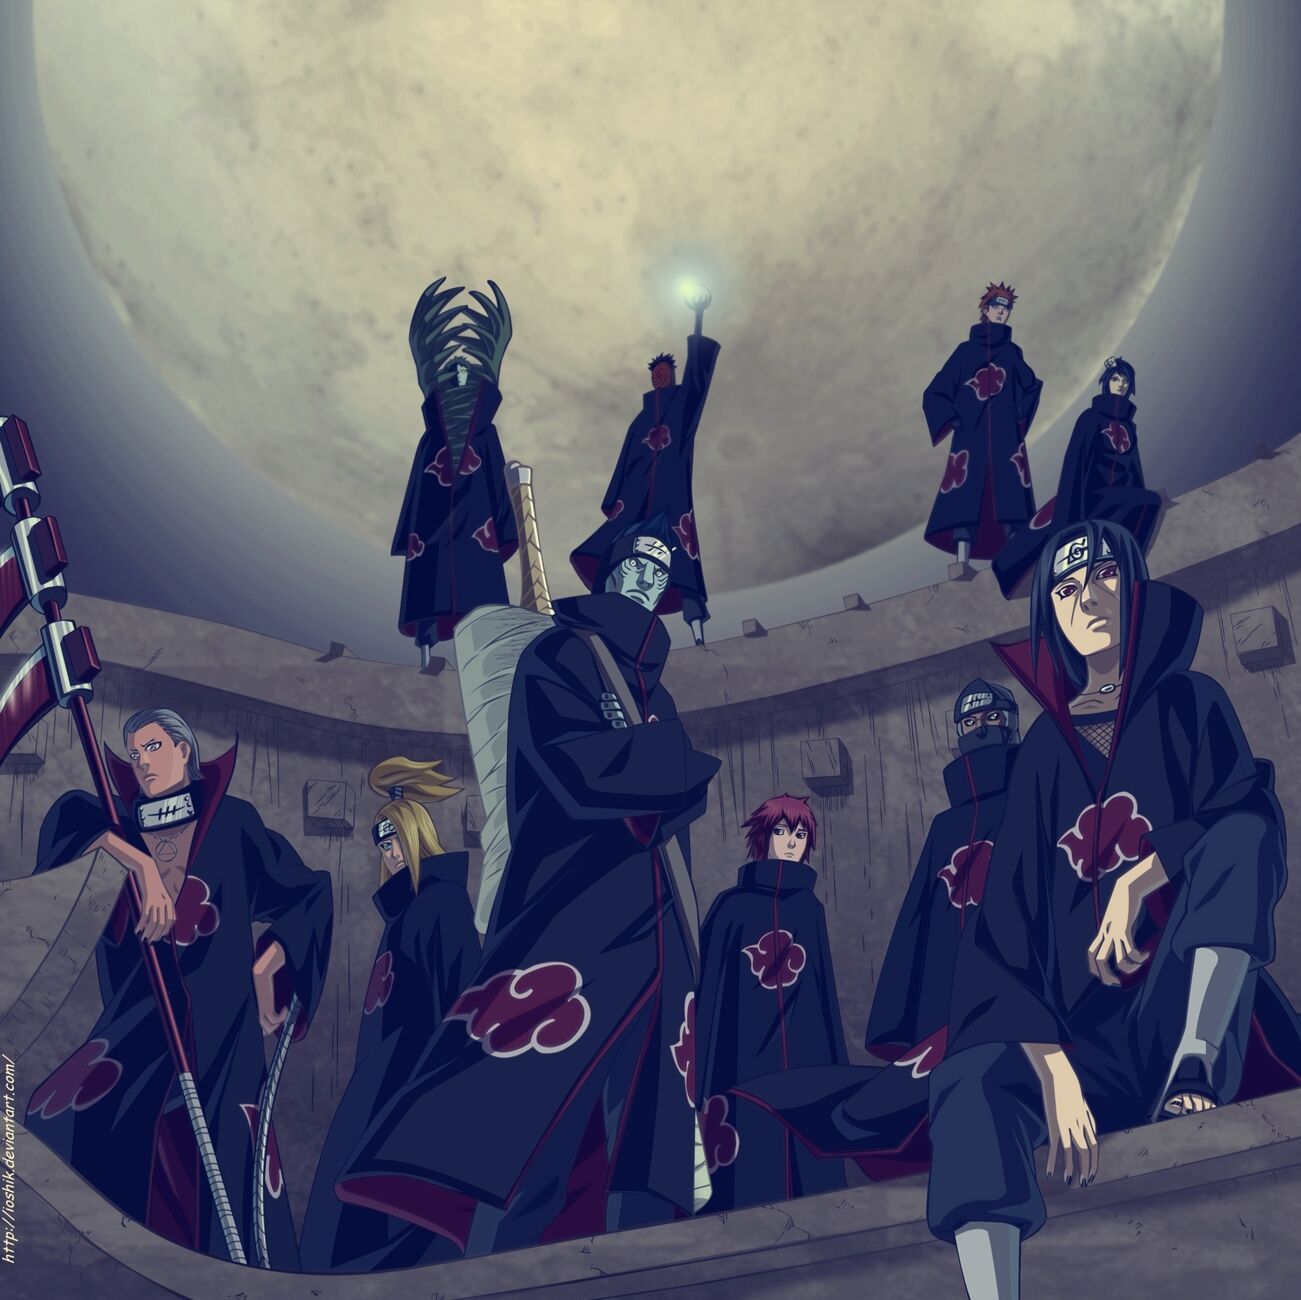 Akatsuki: Akatsuki đúng là một trong những tổ chức ninja đáng sợ nhất trong thế giới Naruto. Những kẻ sát nhân tàn bạo này sẽ khiến bạn kinh sợ và tò mò muốn biết thêm về họ. Hãy khám phá những hình ảnh đẹp về các nhân vật Akatsuki, tìm hiểu thêm về cuộc chiến giữa họ và Naruto.